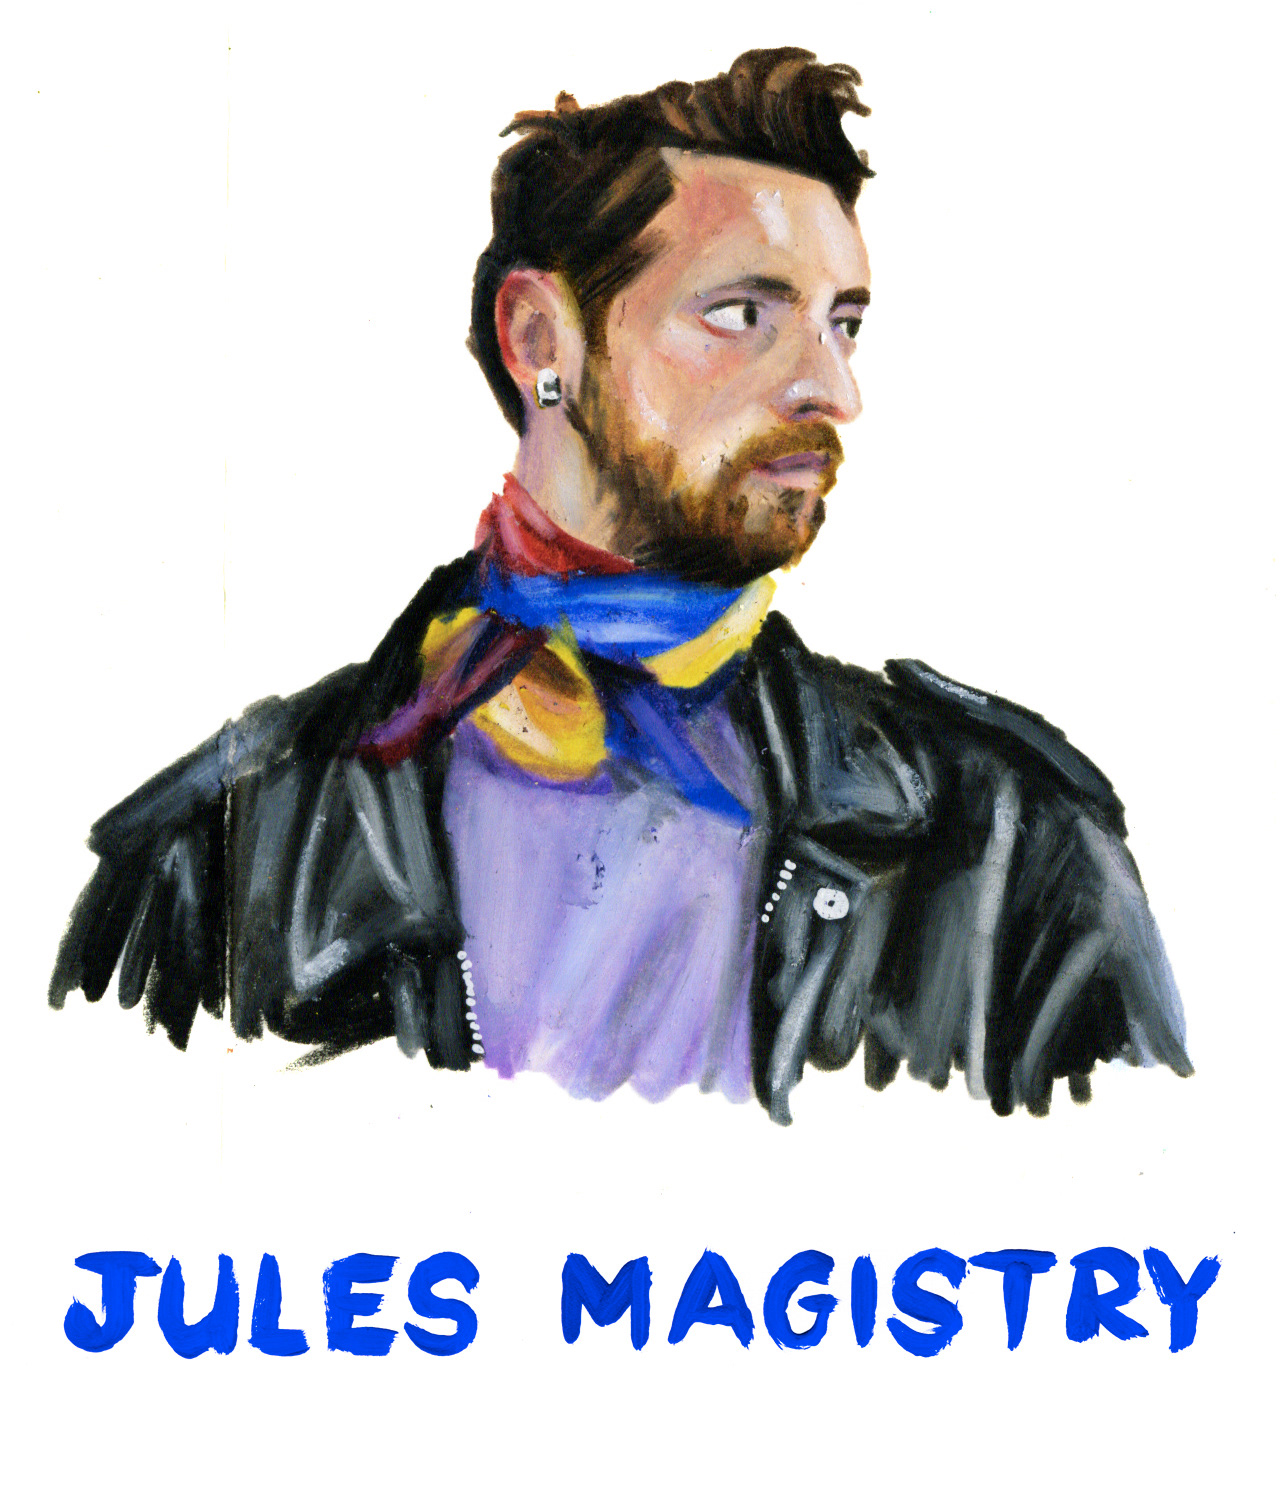 Jules Magistry